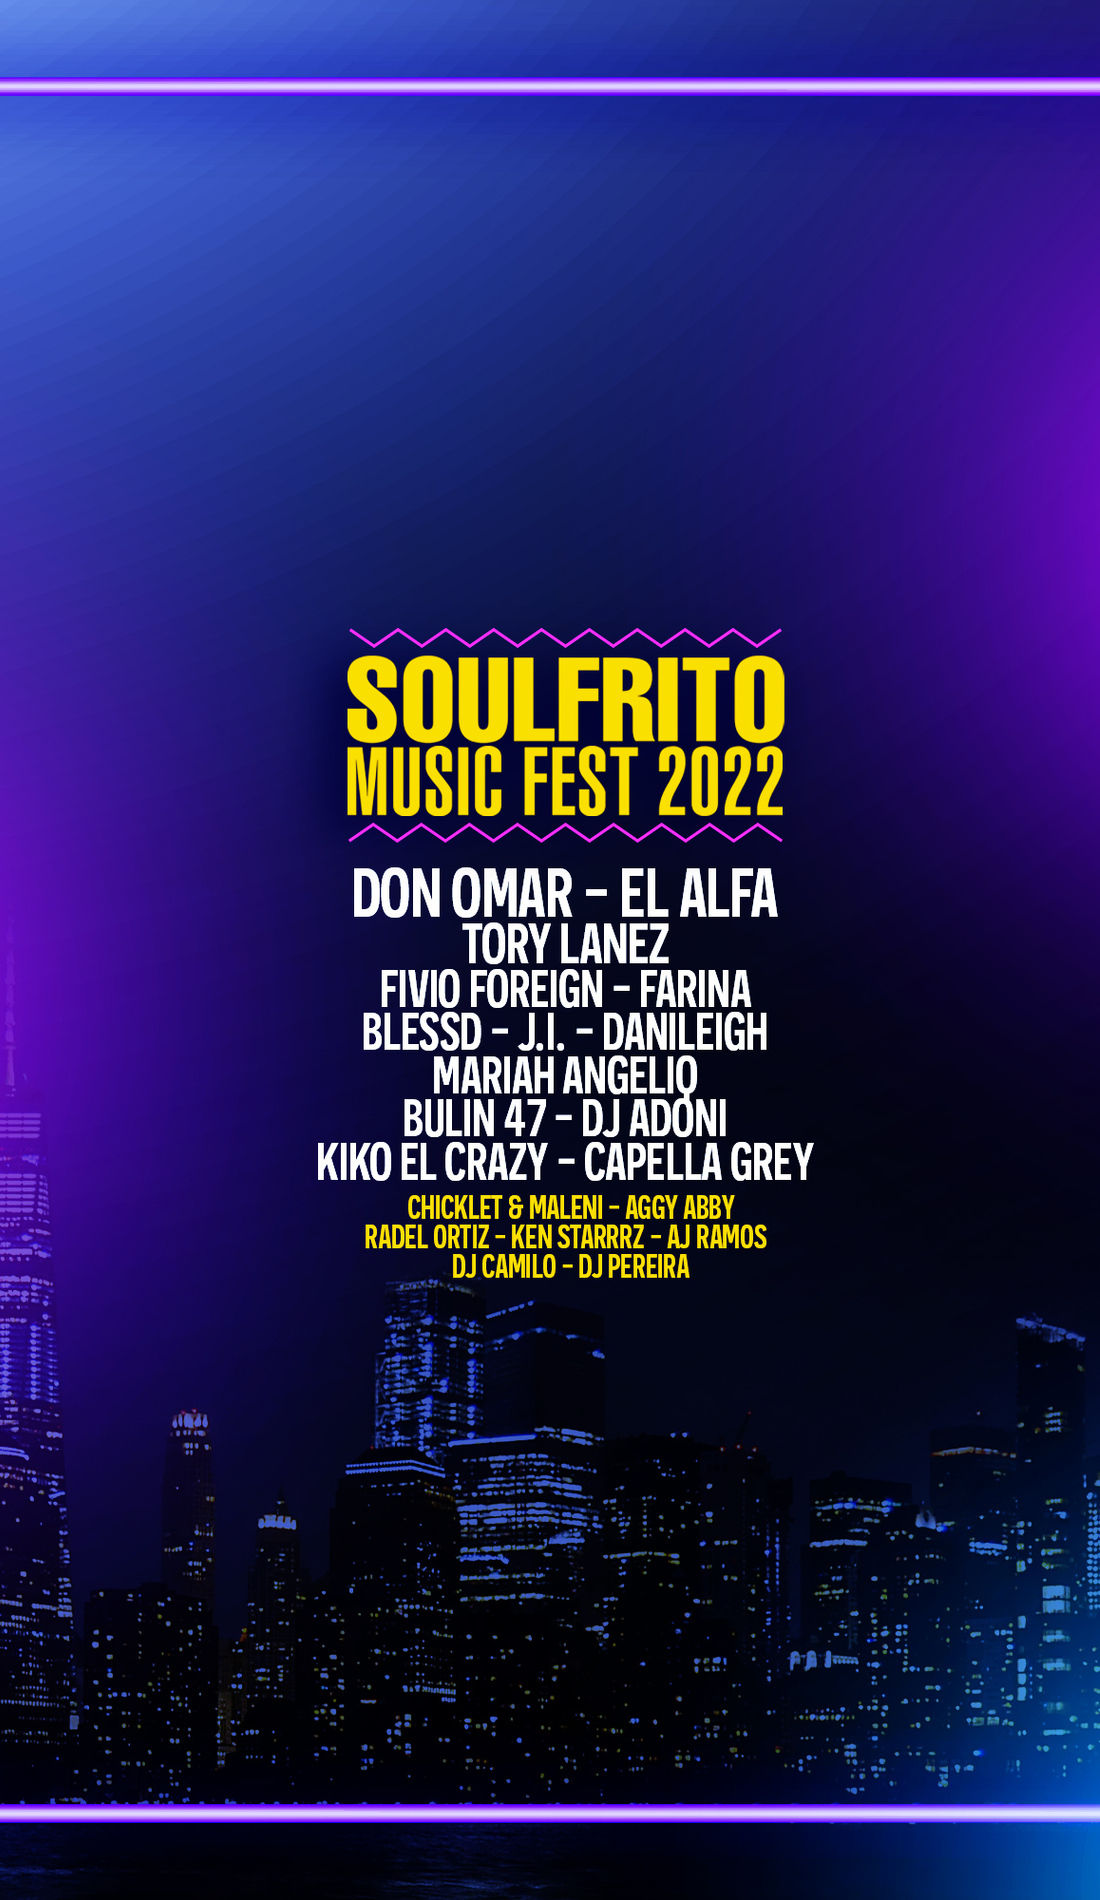 A Soulfrito Music Festival live event